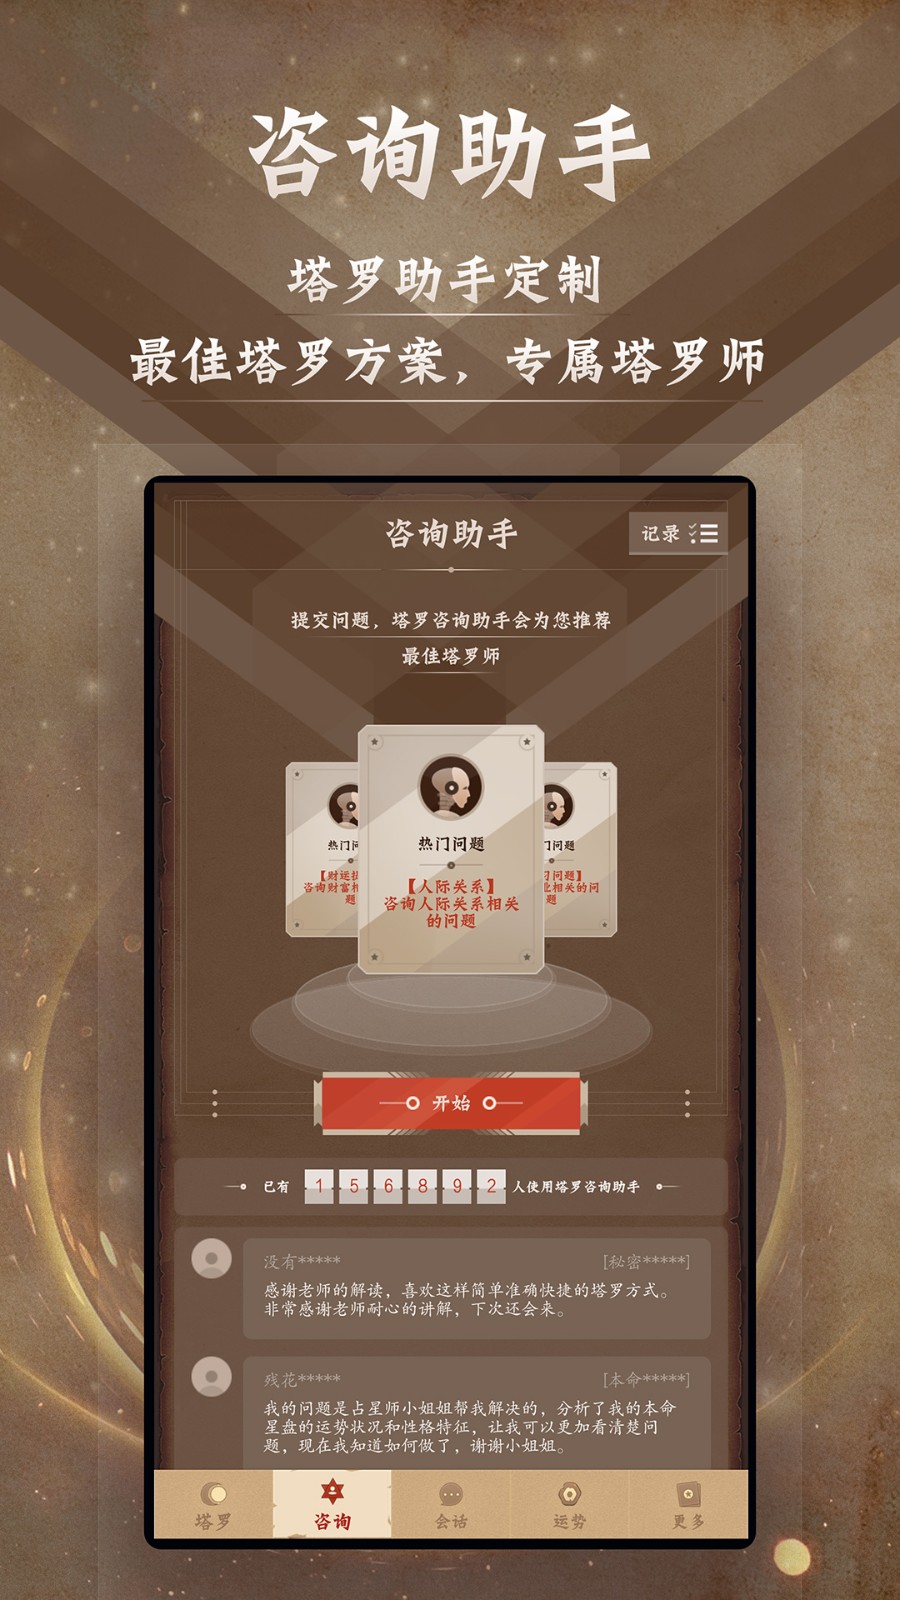 塔罗牌中文版手机APP免费下载